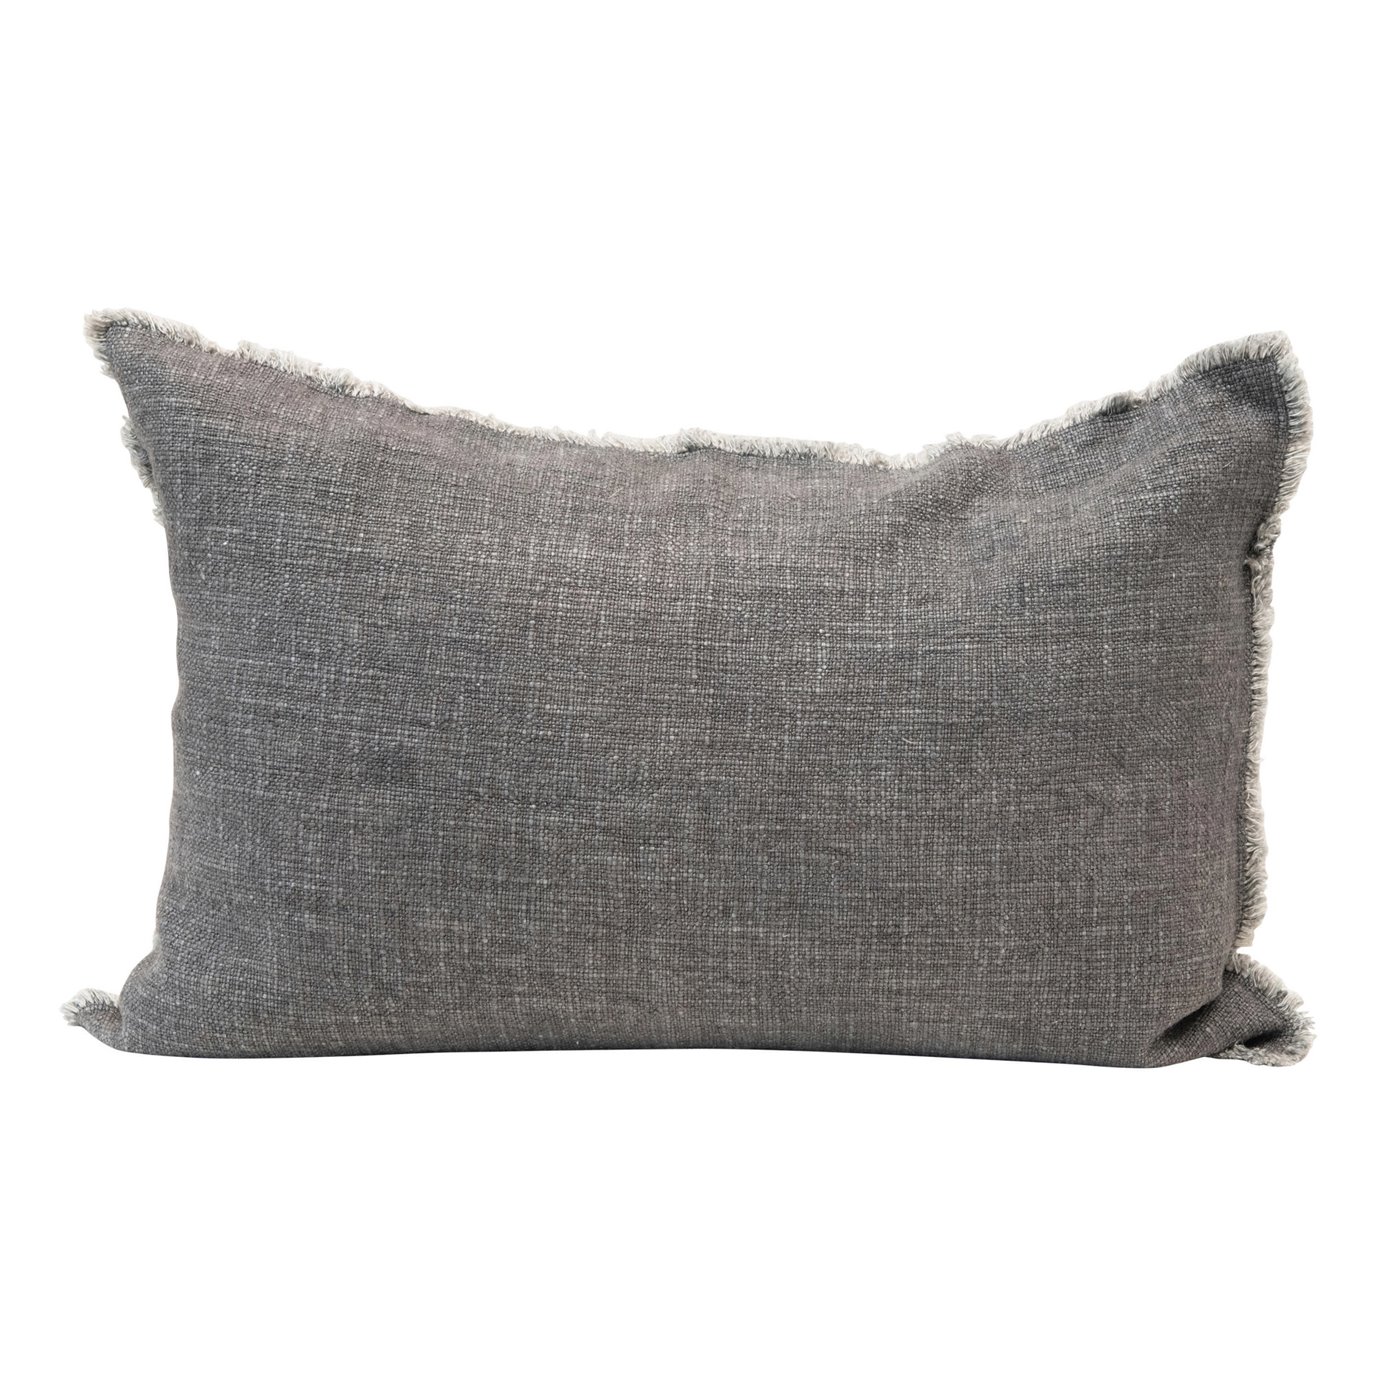 Linen Blend Lumbar Pillow with Frayed Edges, Grey